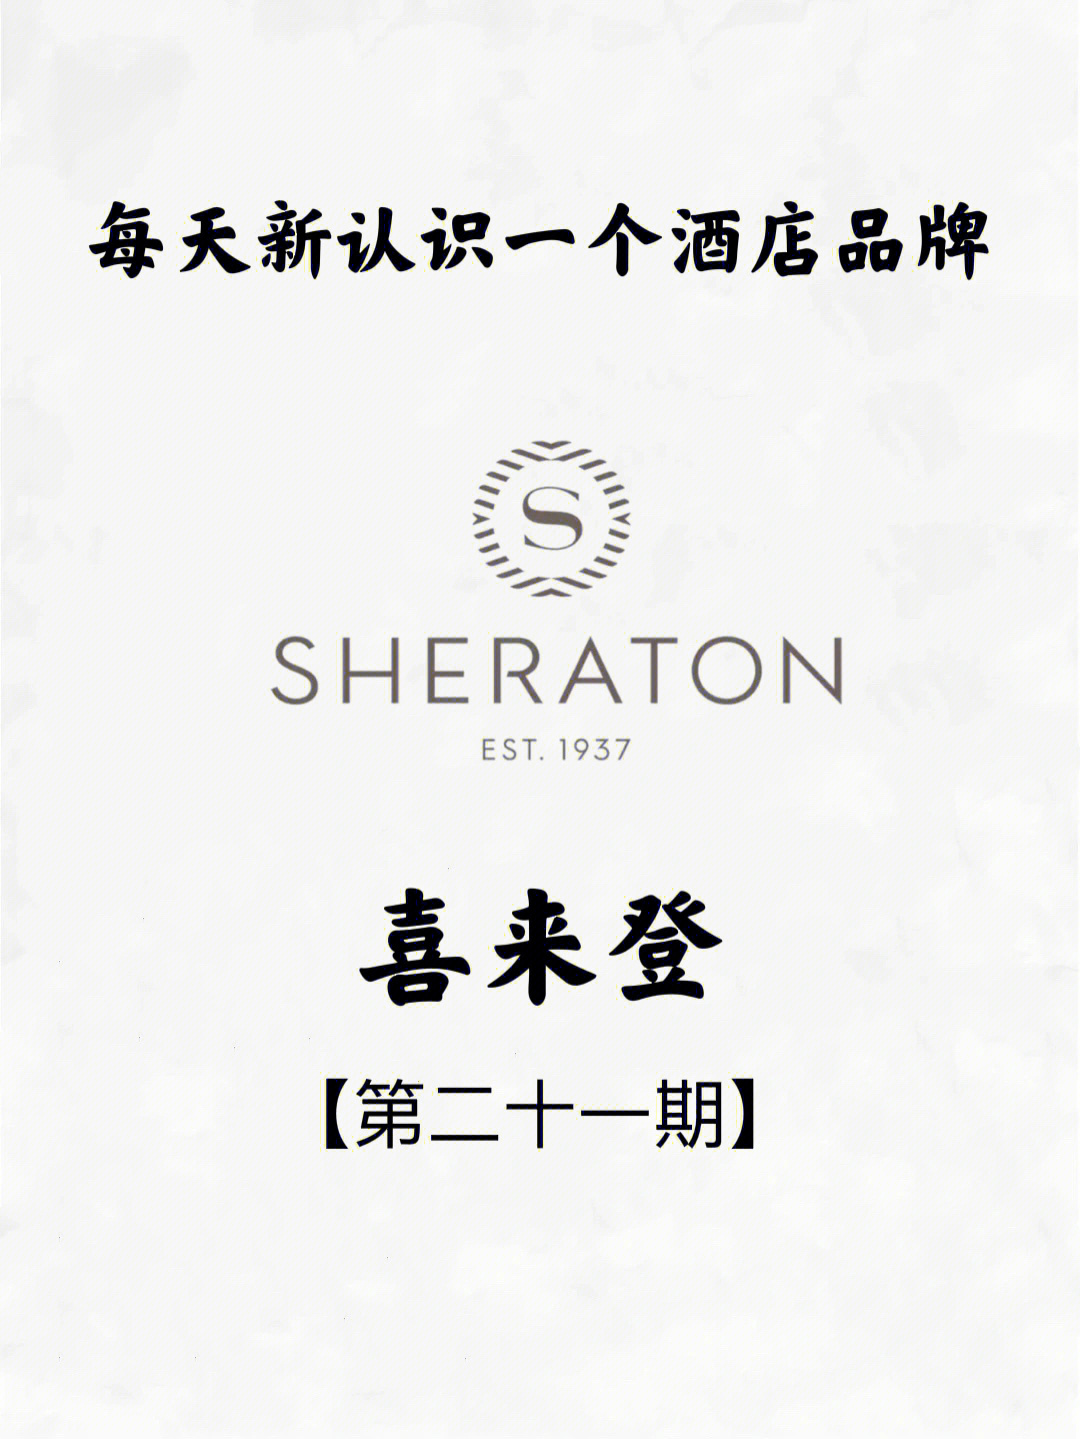 每天新认识一个酒店品牌sheraton喜来登